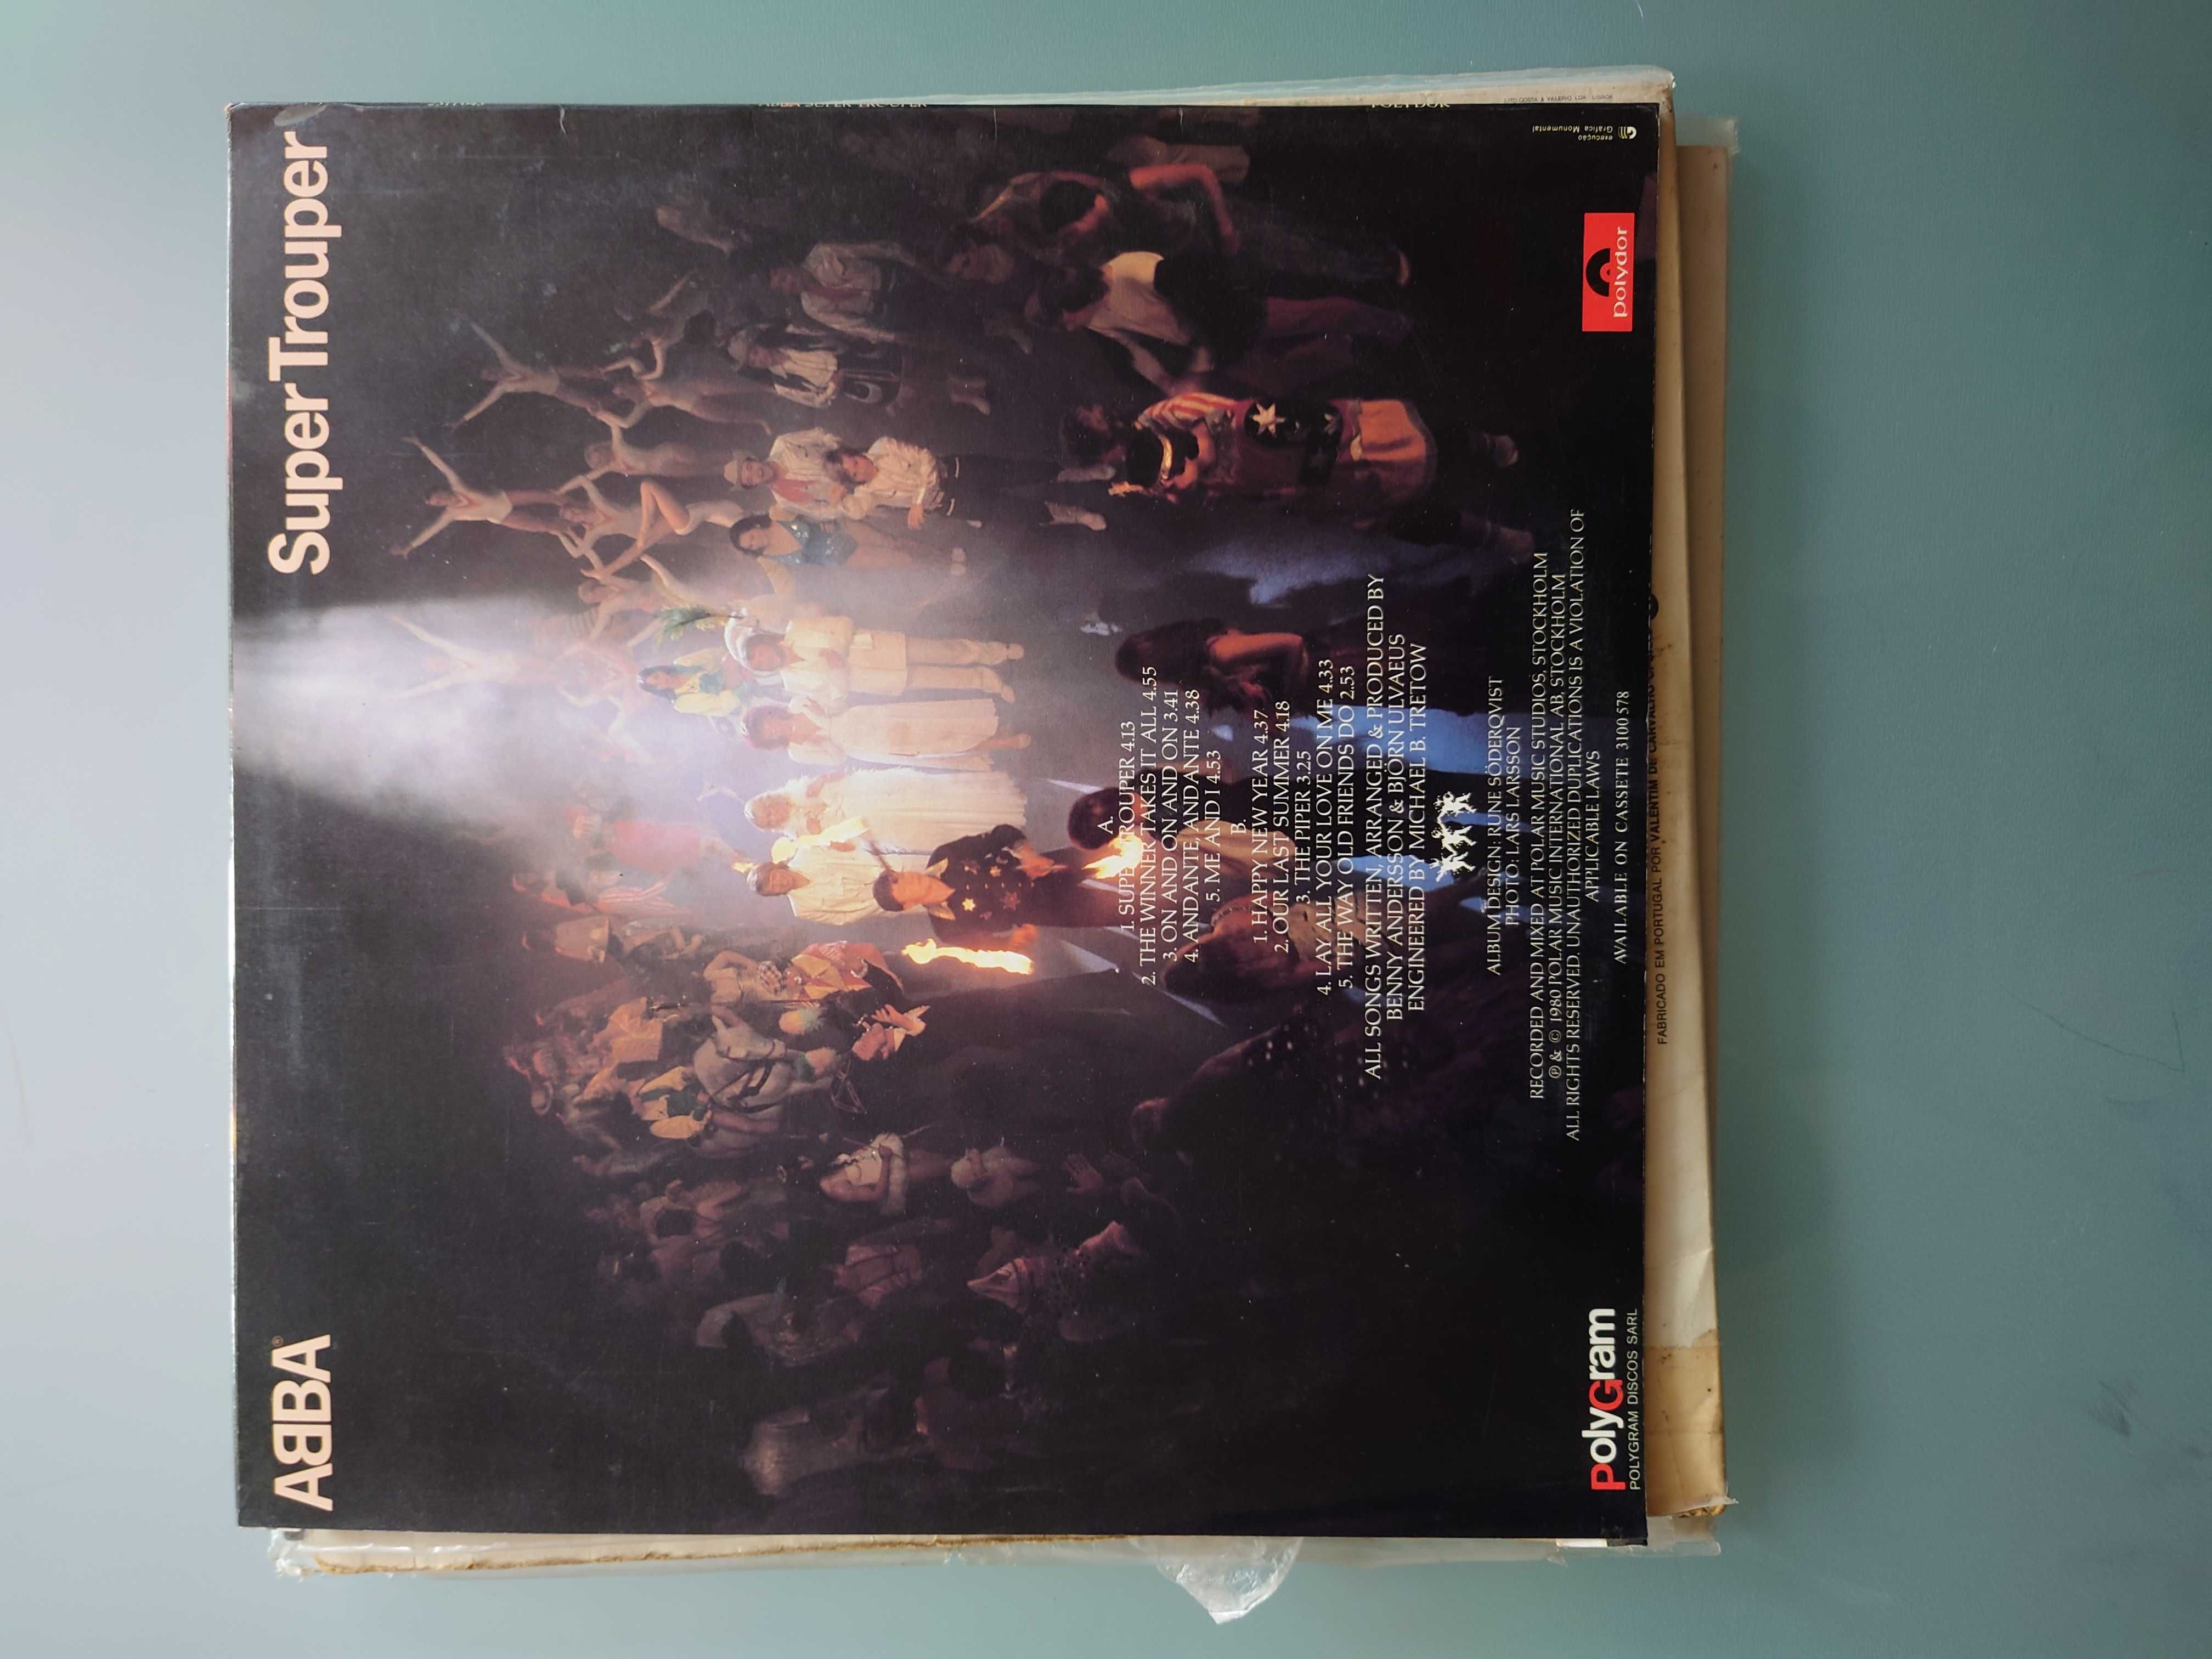 ABBA Supertrouper vinyl